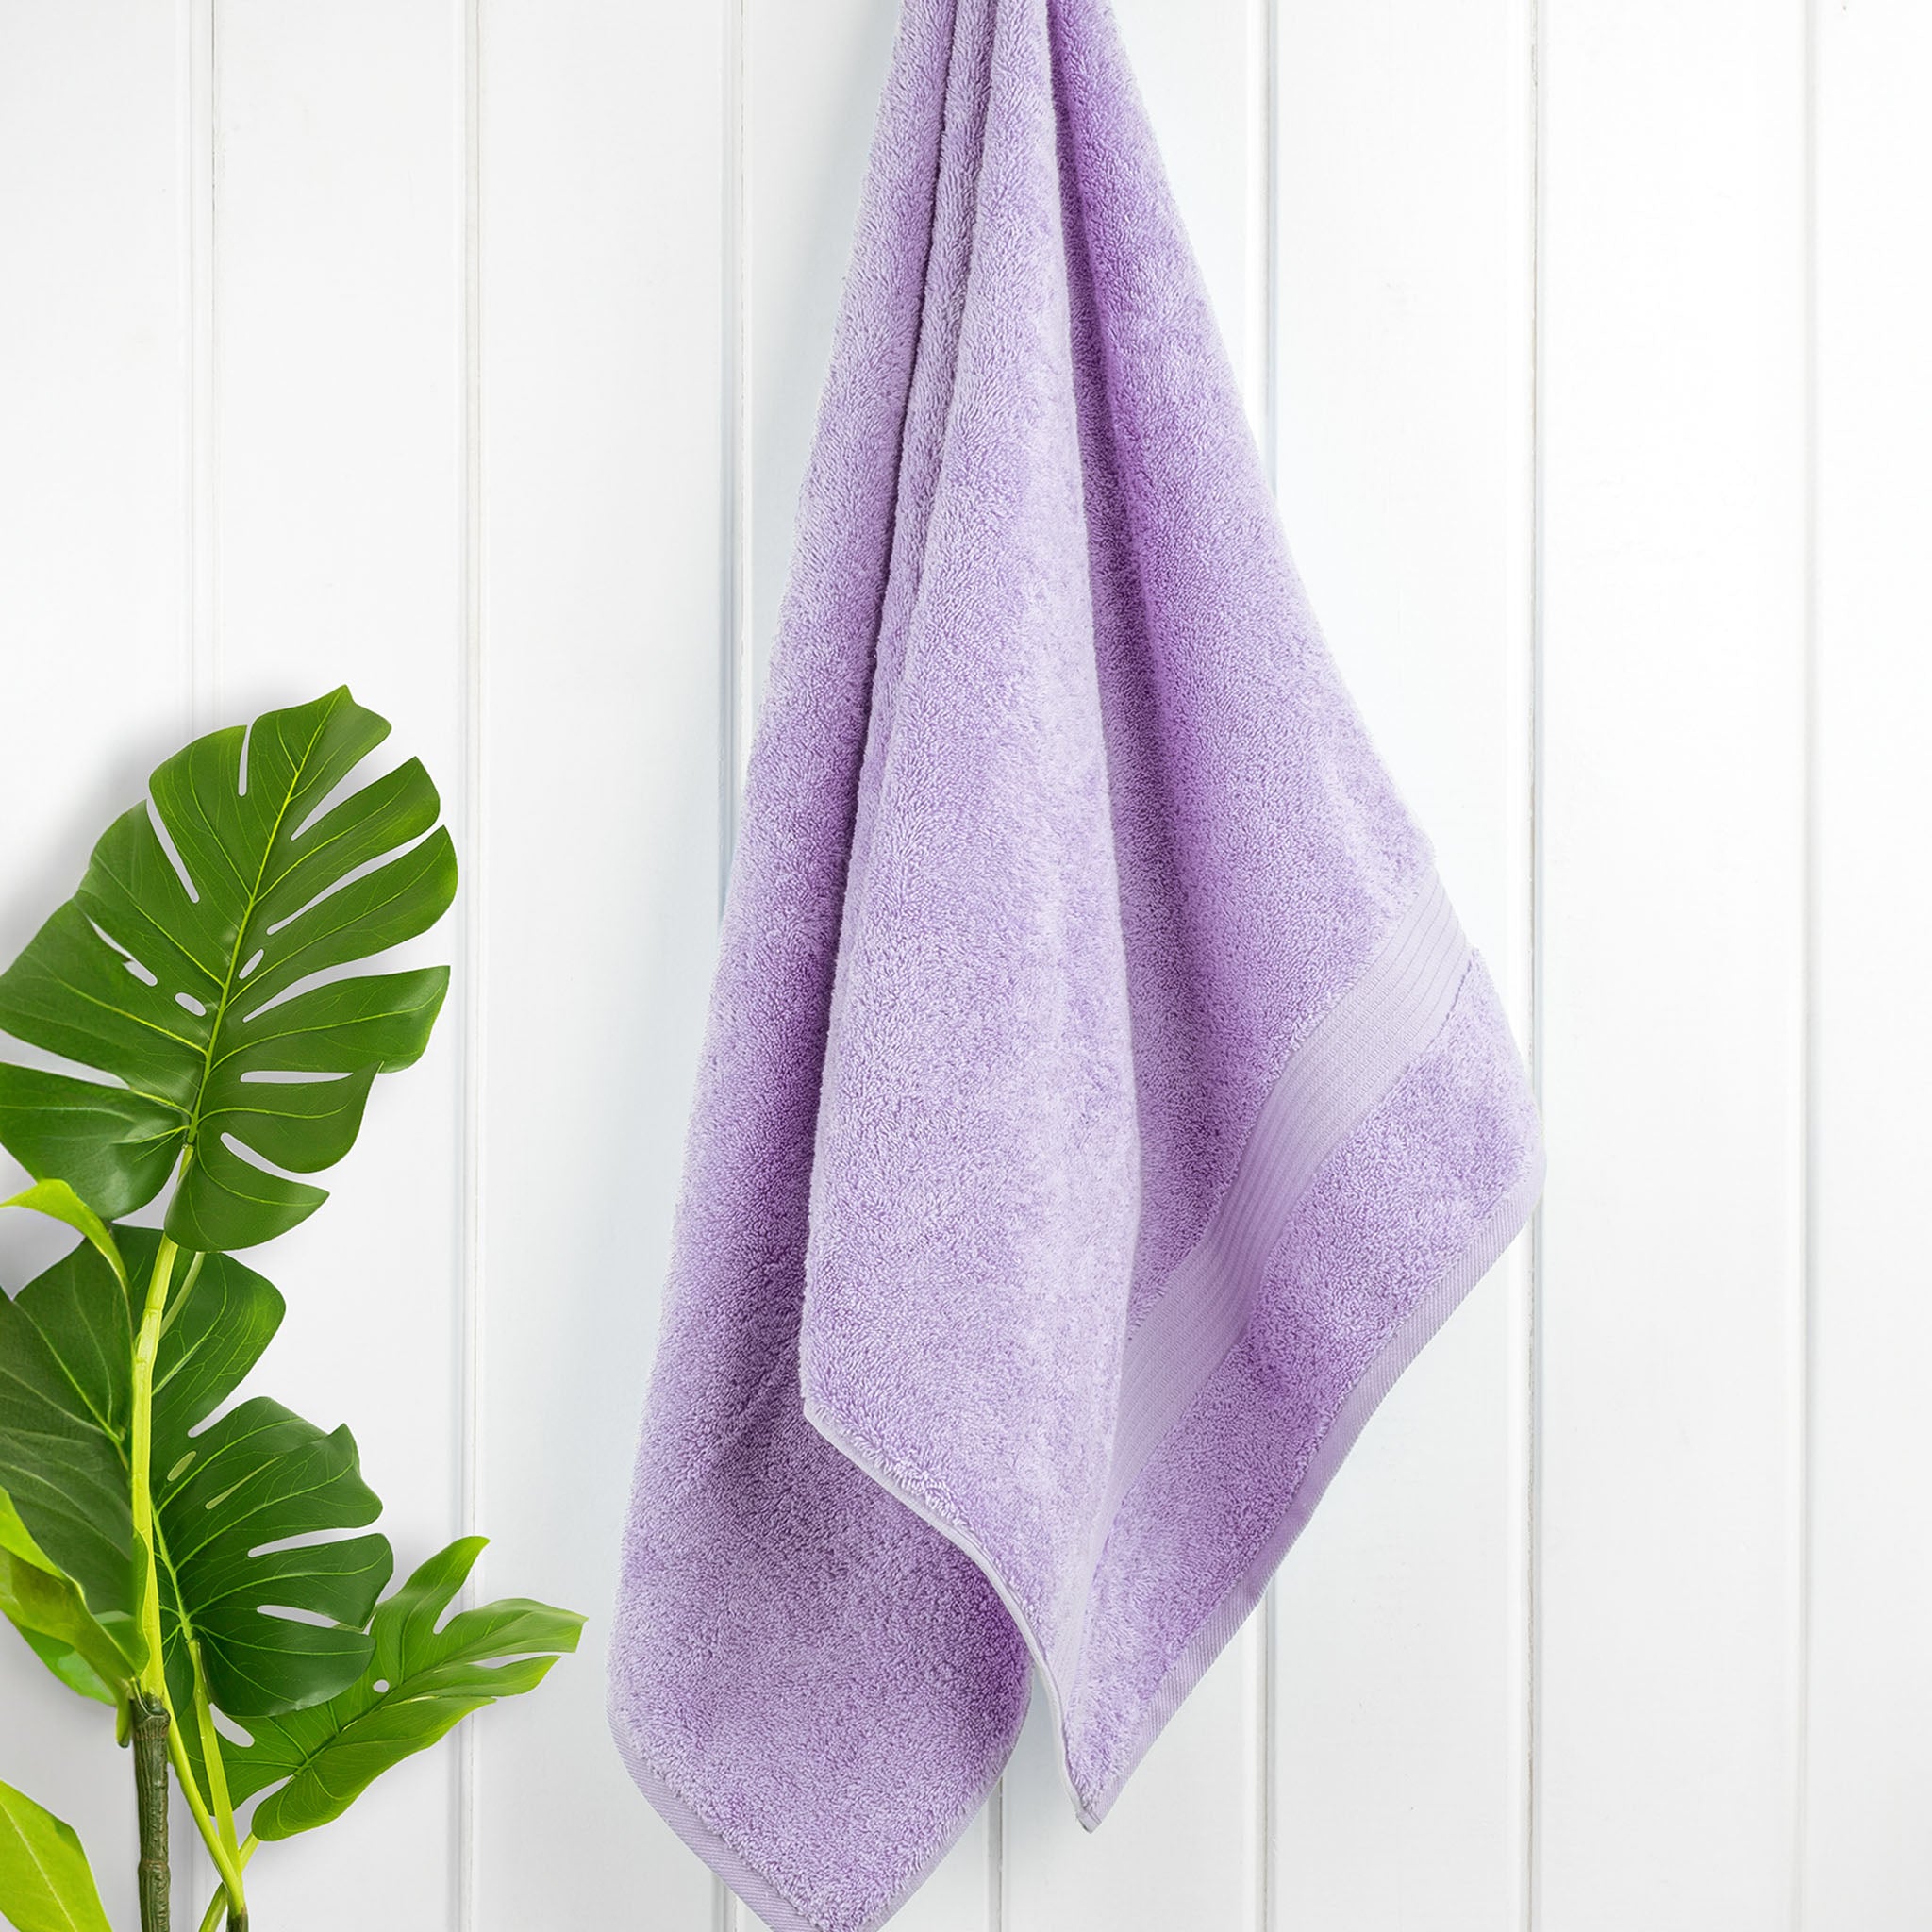 American Soft Linen Bekos 100% Cotton Turkish Towels, 4 Piece Bath Towel Set -lilac-02